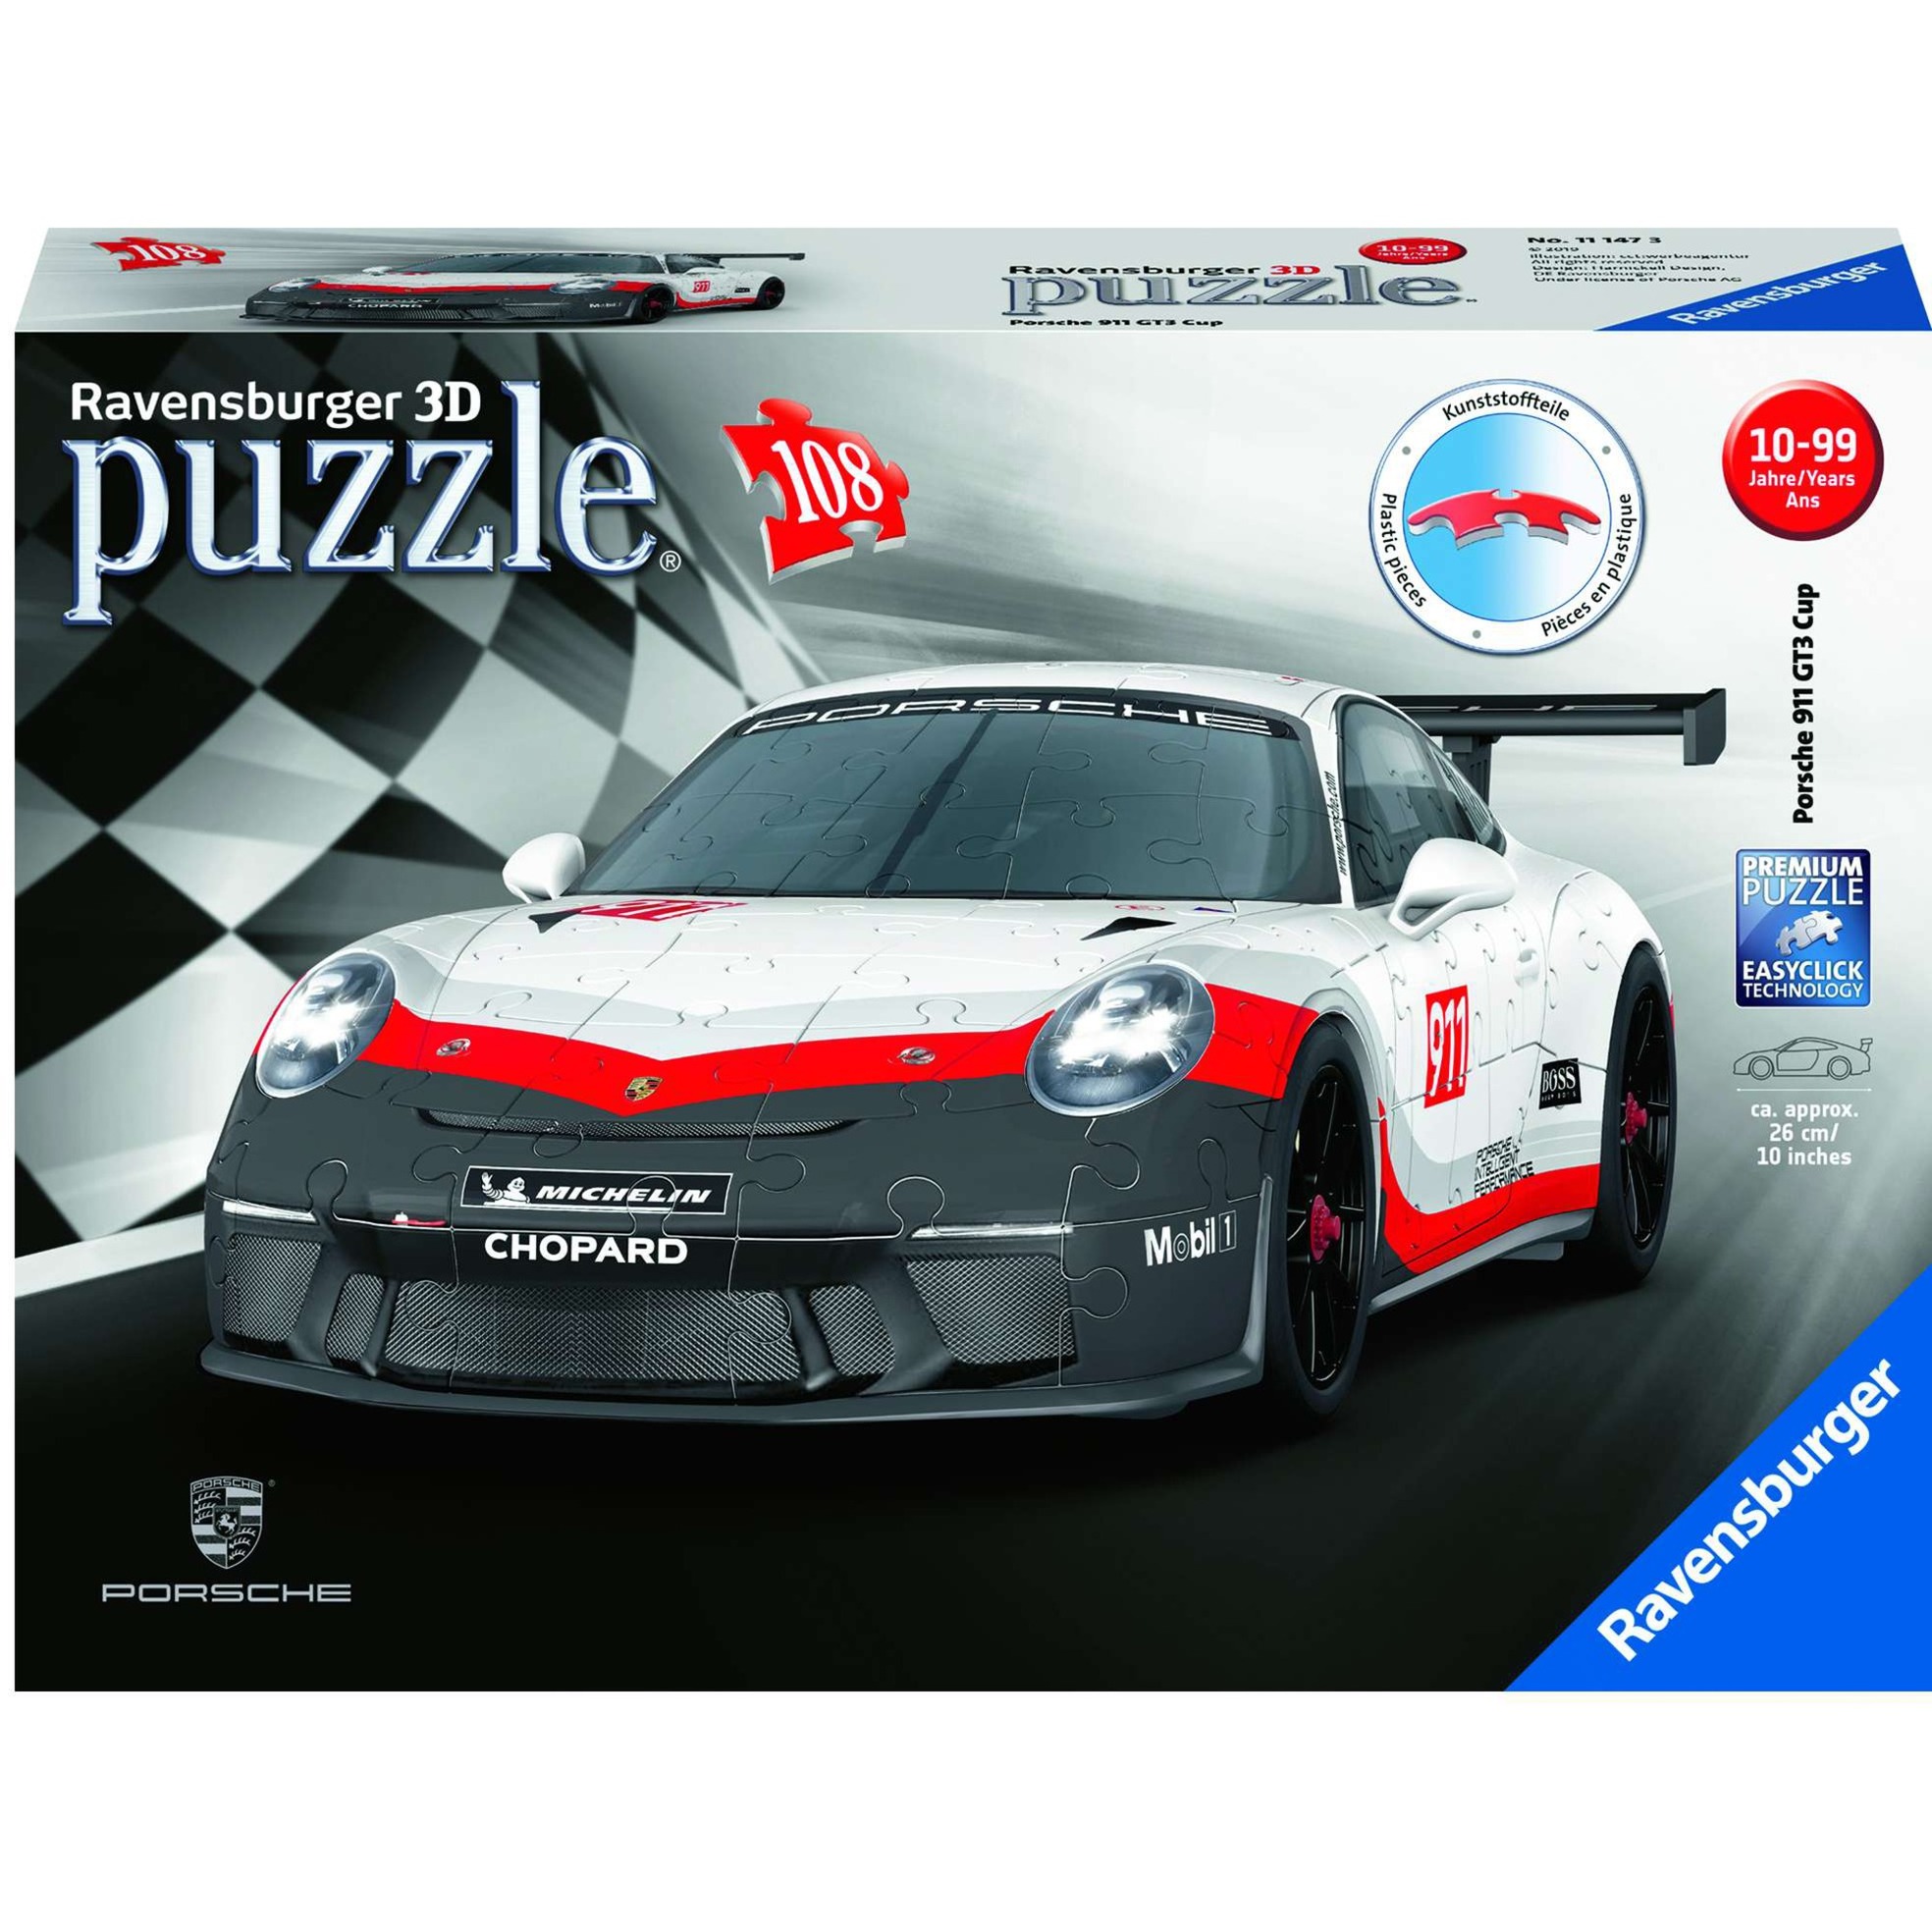 Image of Alternate - 3D Puzzle Porsche GT3 Cup online einkaufen bei Alternate